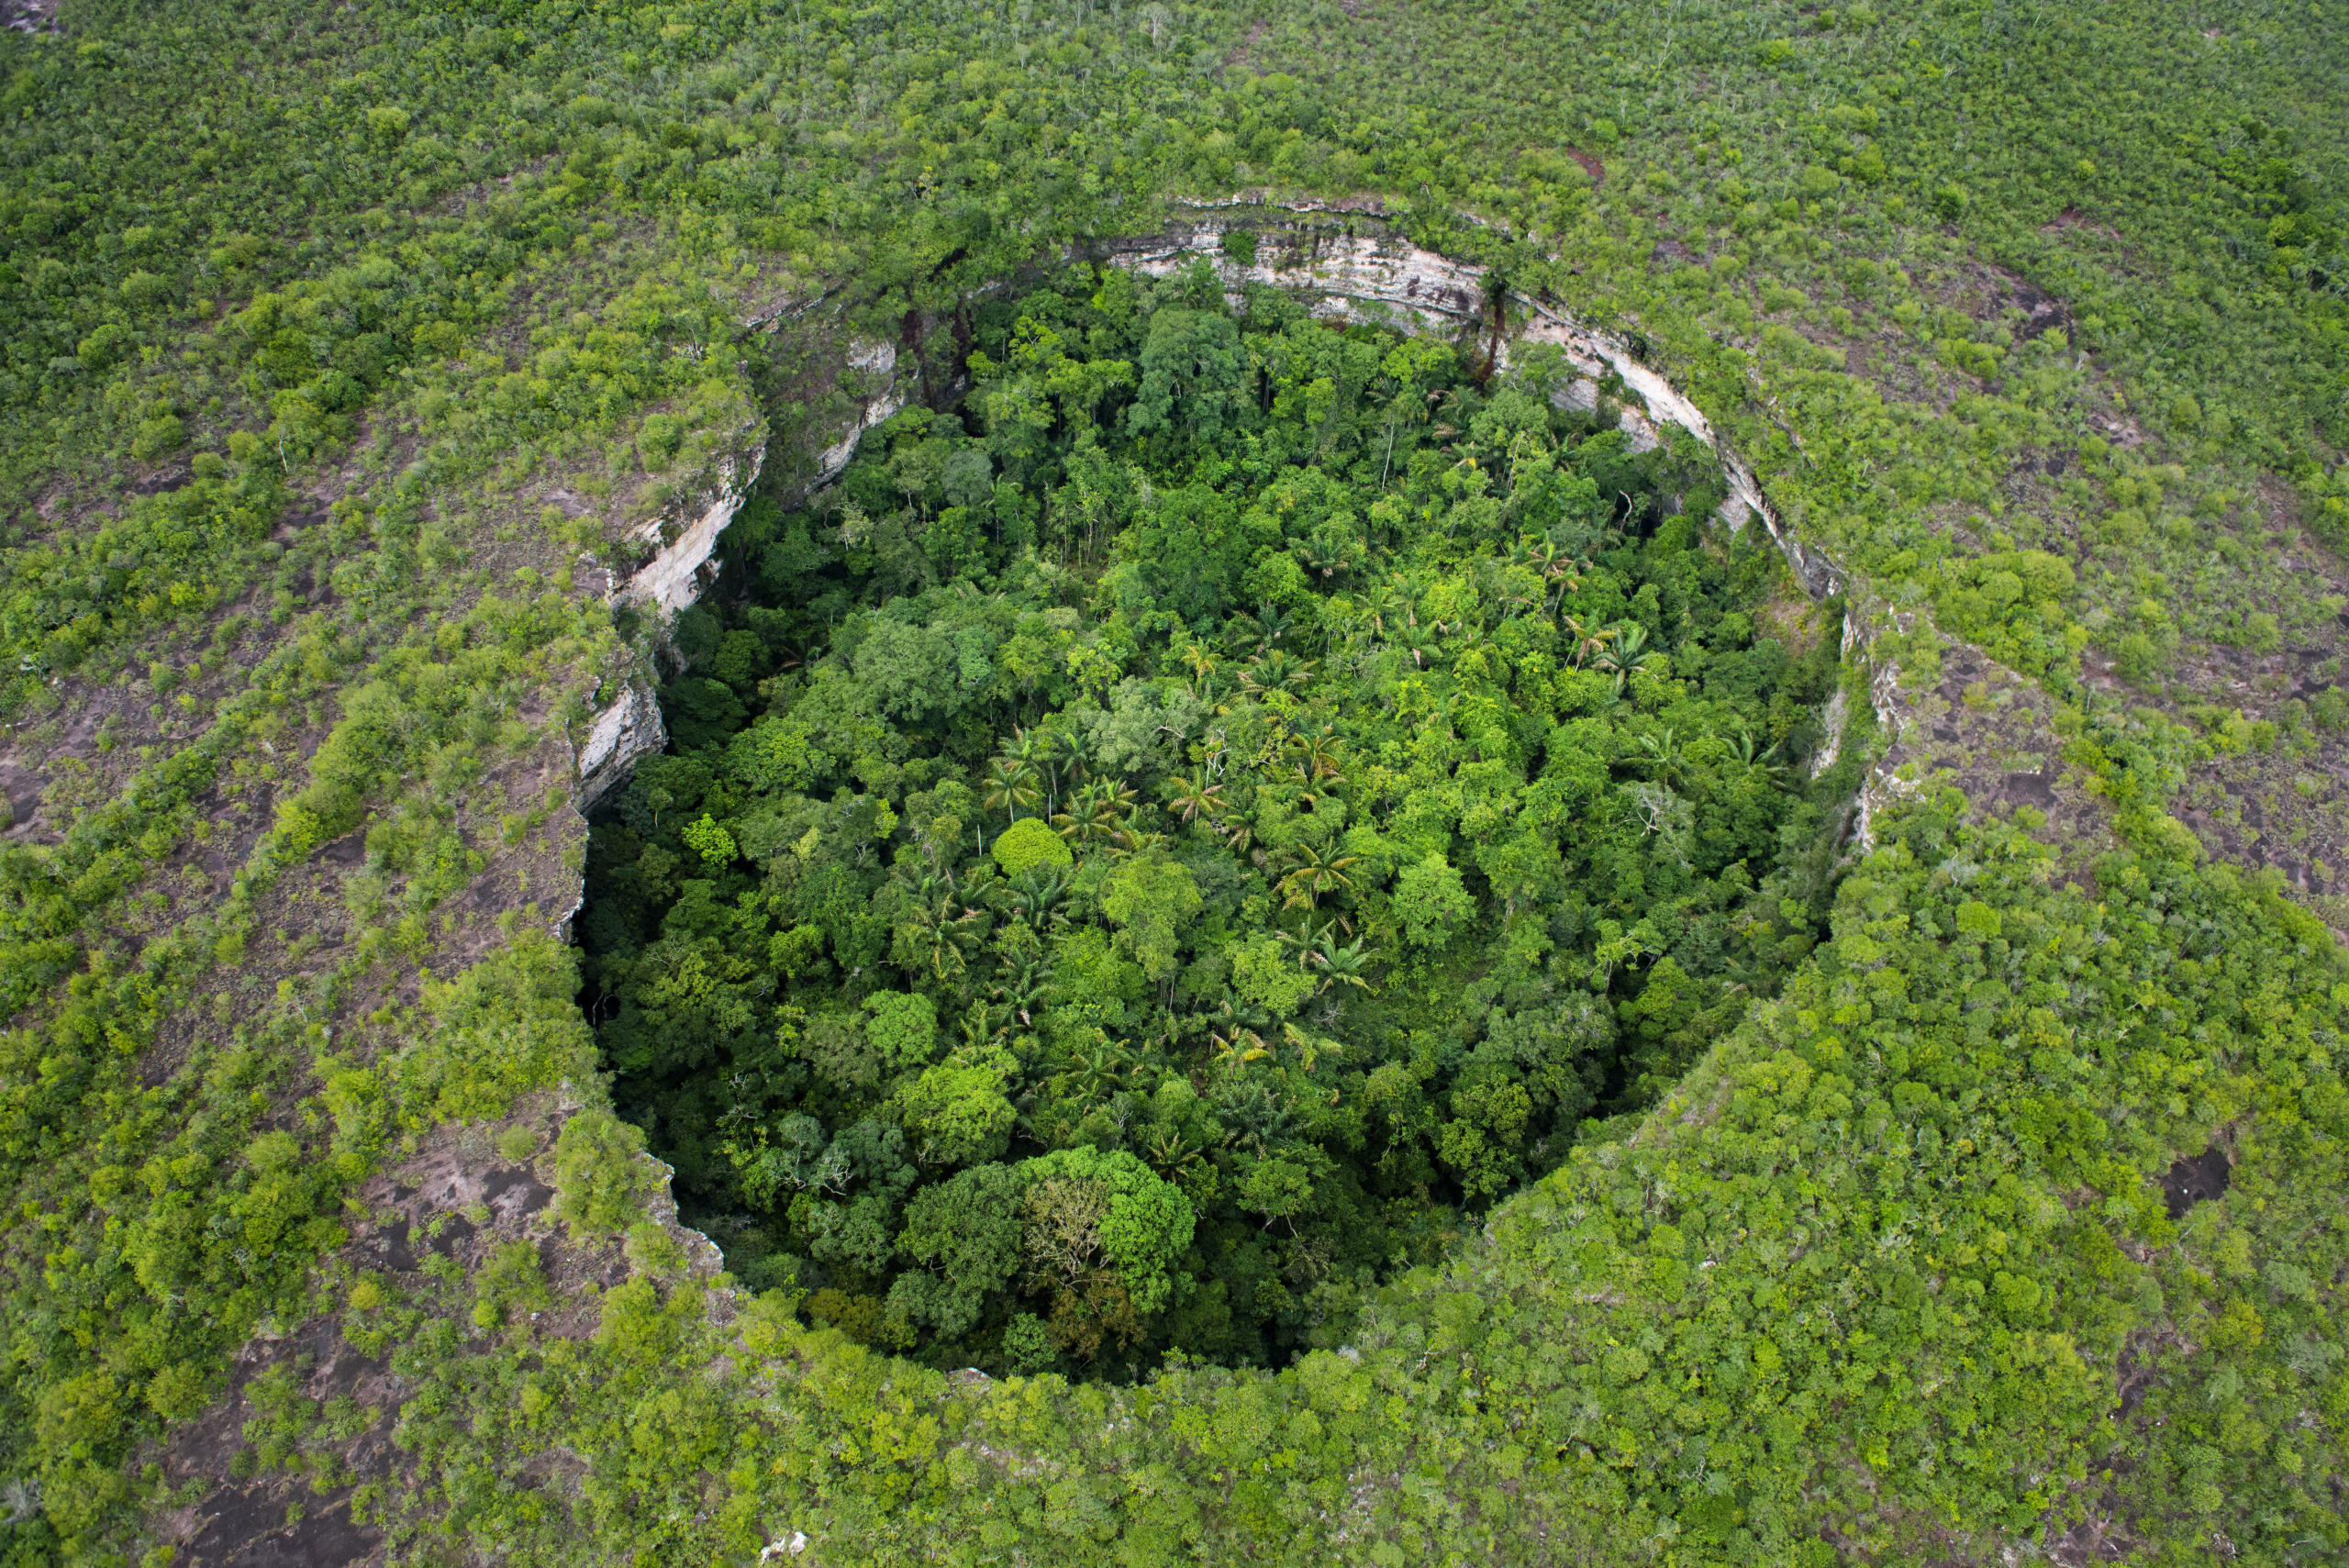 Awarded photo from a rainforest in Guyana - Daniel Rosengren